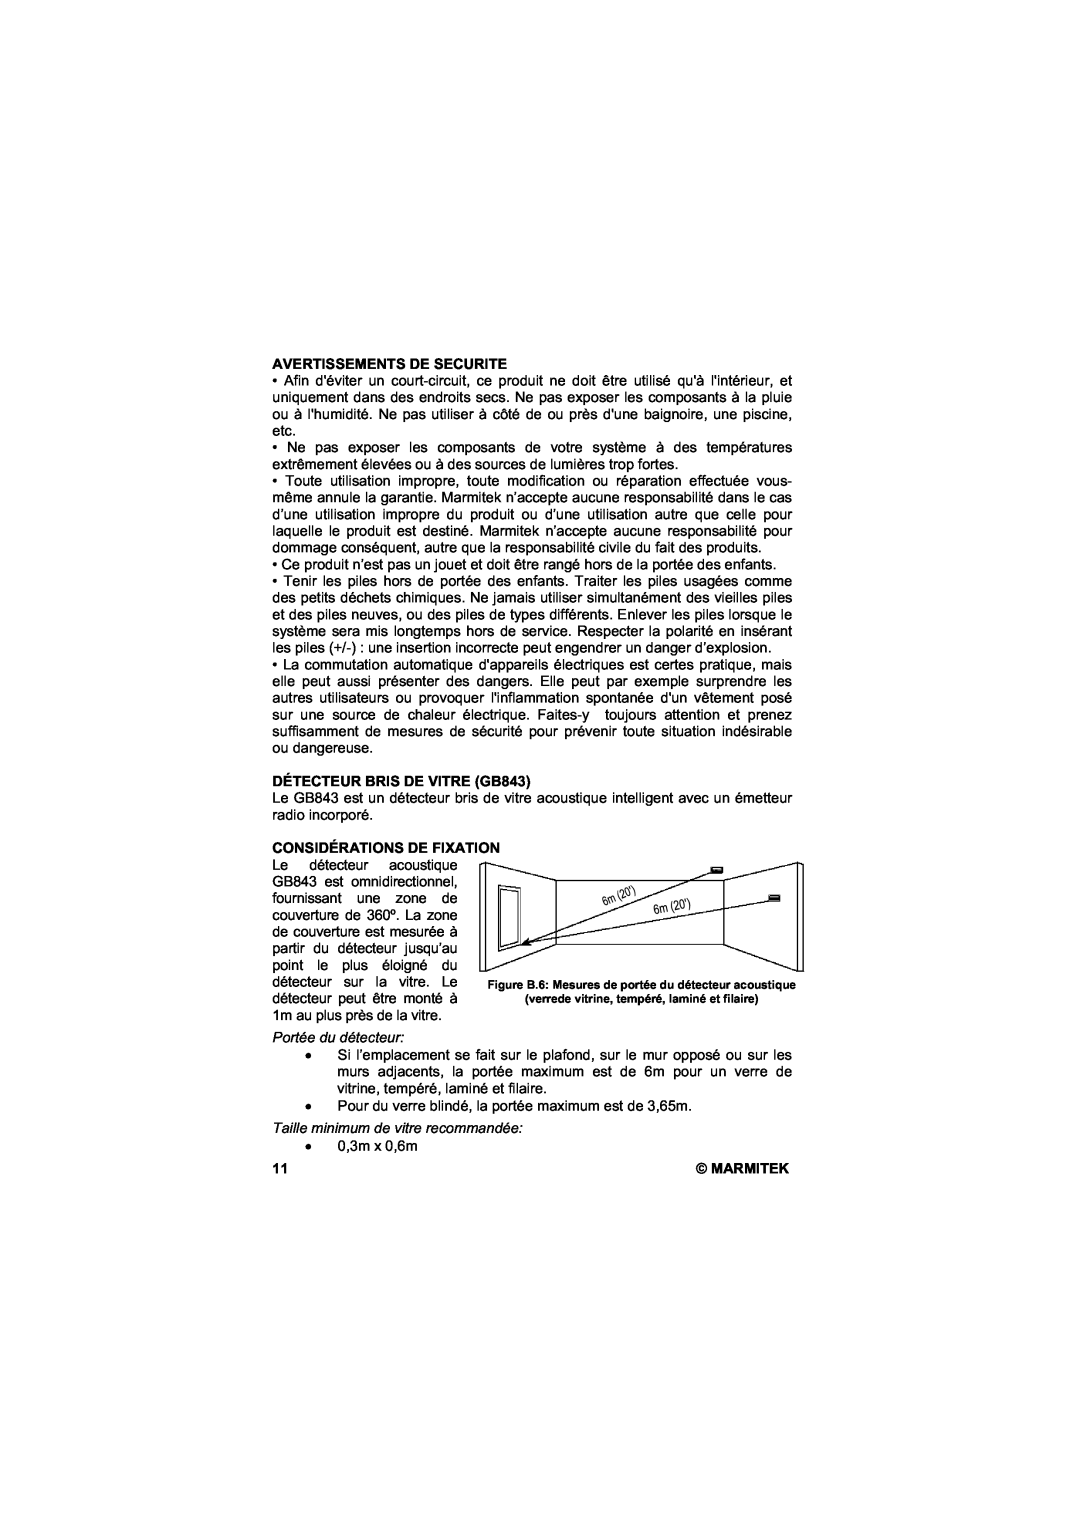 Marmitek user manual Avertissements De Securite, DÉTECTEUR BRIS DE VITRE GB843, Portée du détecteur 